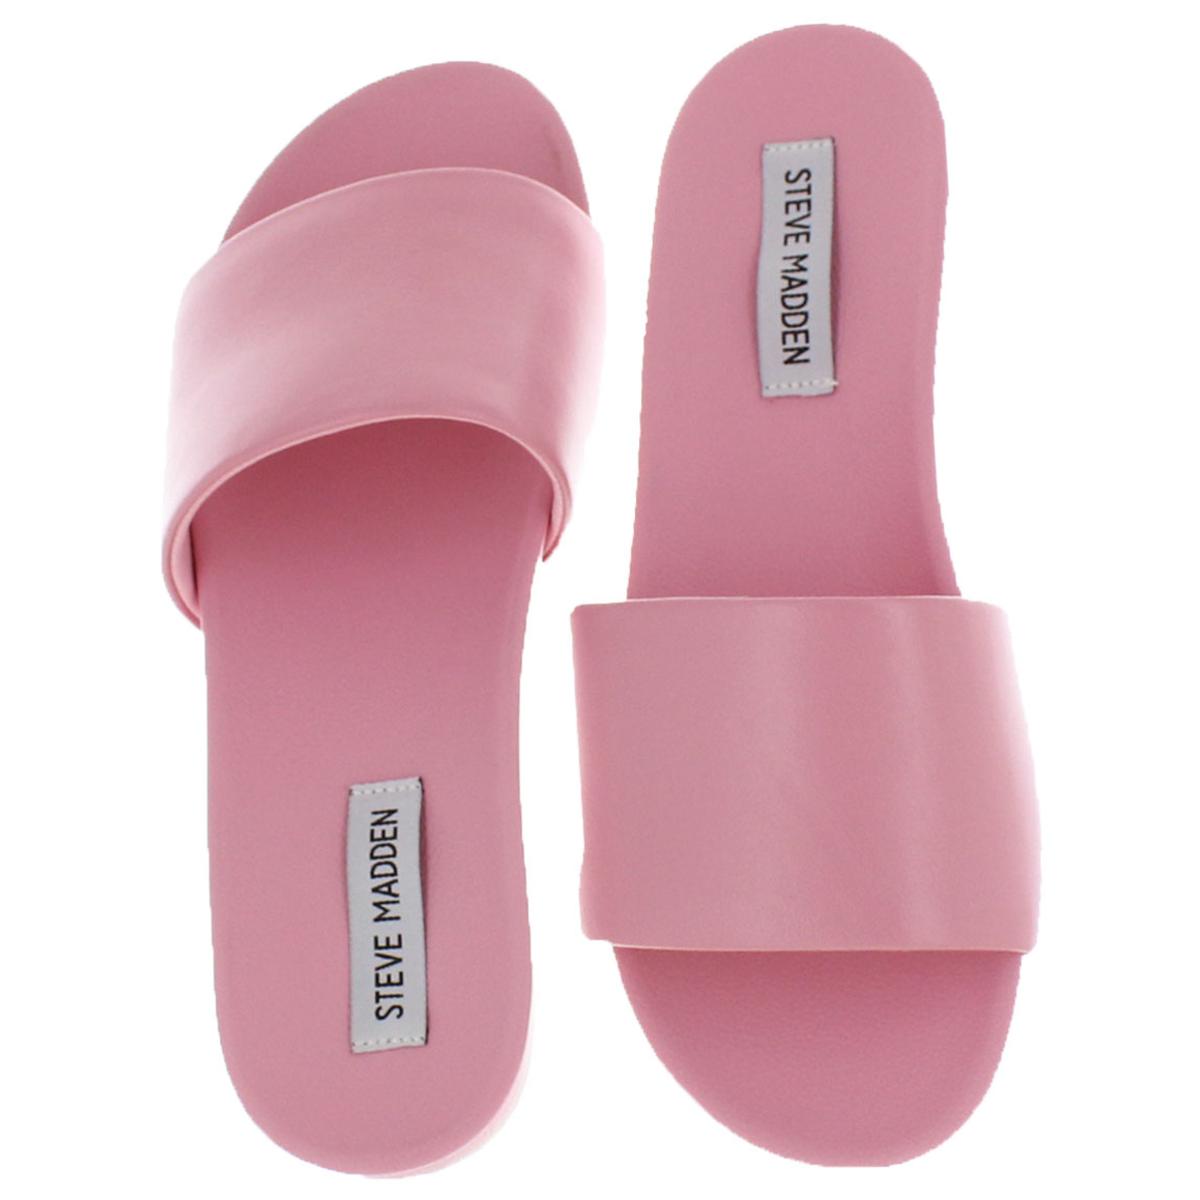 Steve Madden Womens Daze Pink Slide Sandals Shoes 5.5 Medium (B,M) BHFO ...